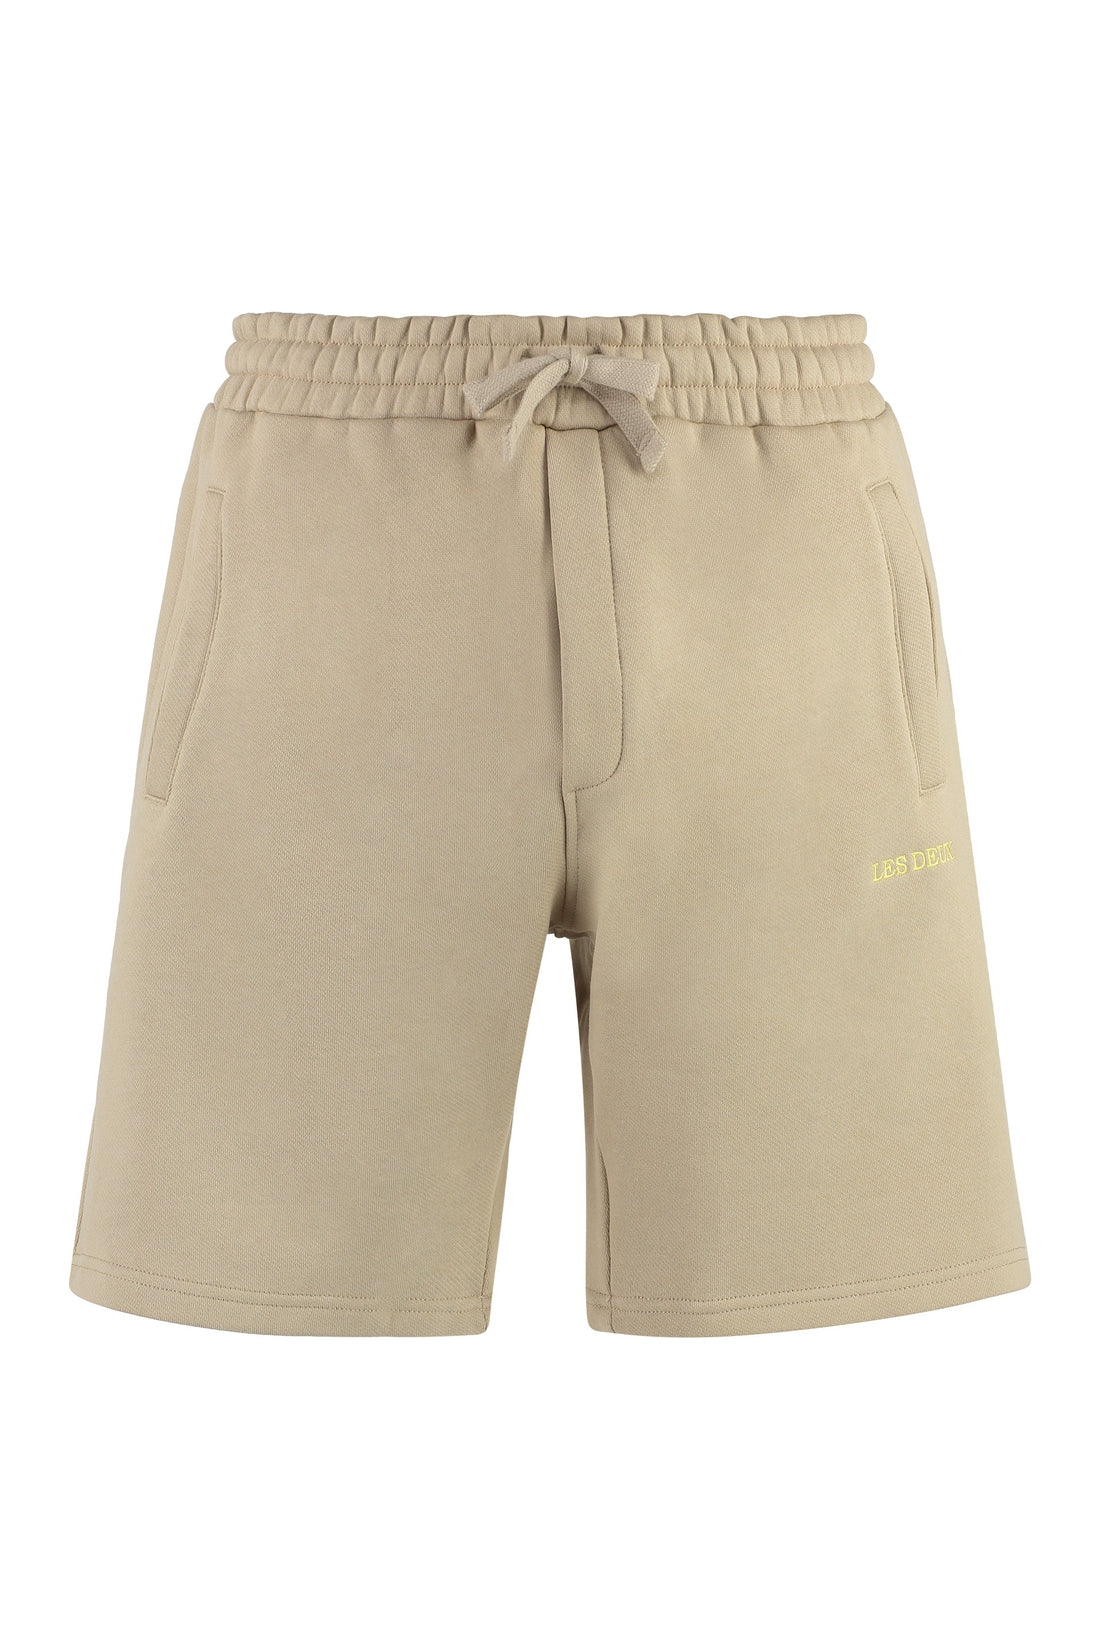 Les Deux-OUTLET-SALE-Diego fleece shorts-ARCHIVIST